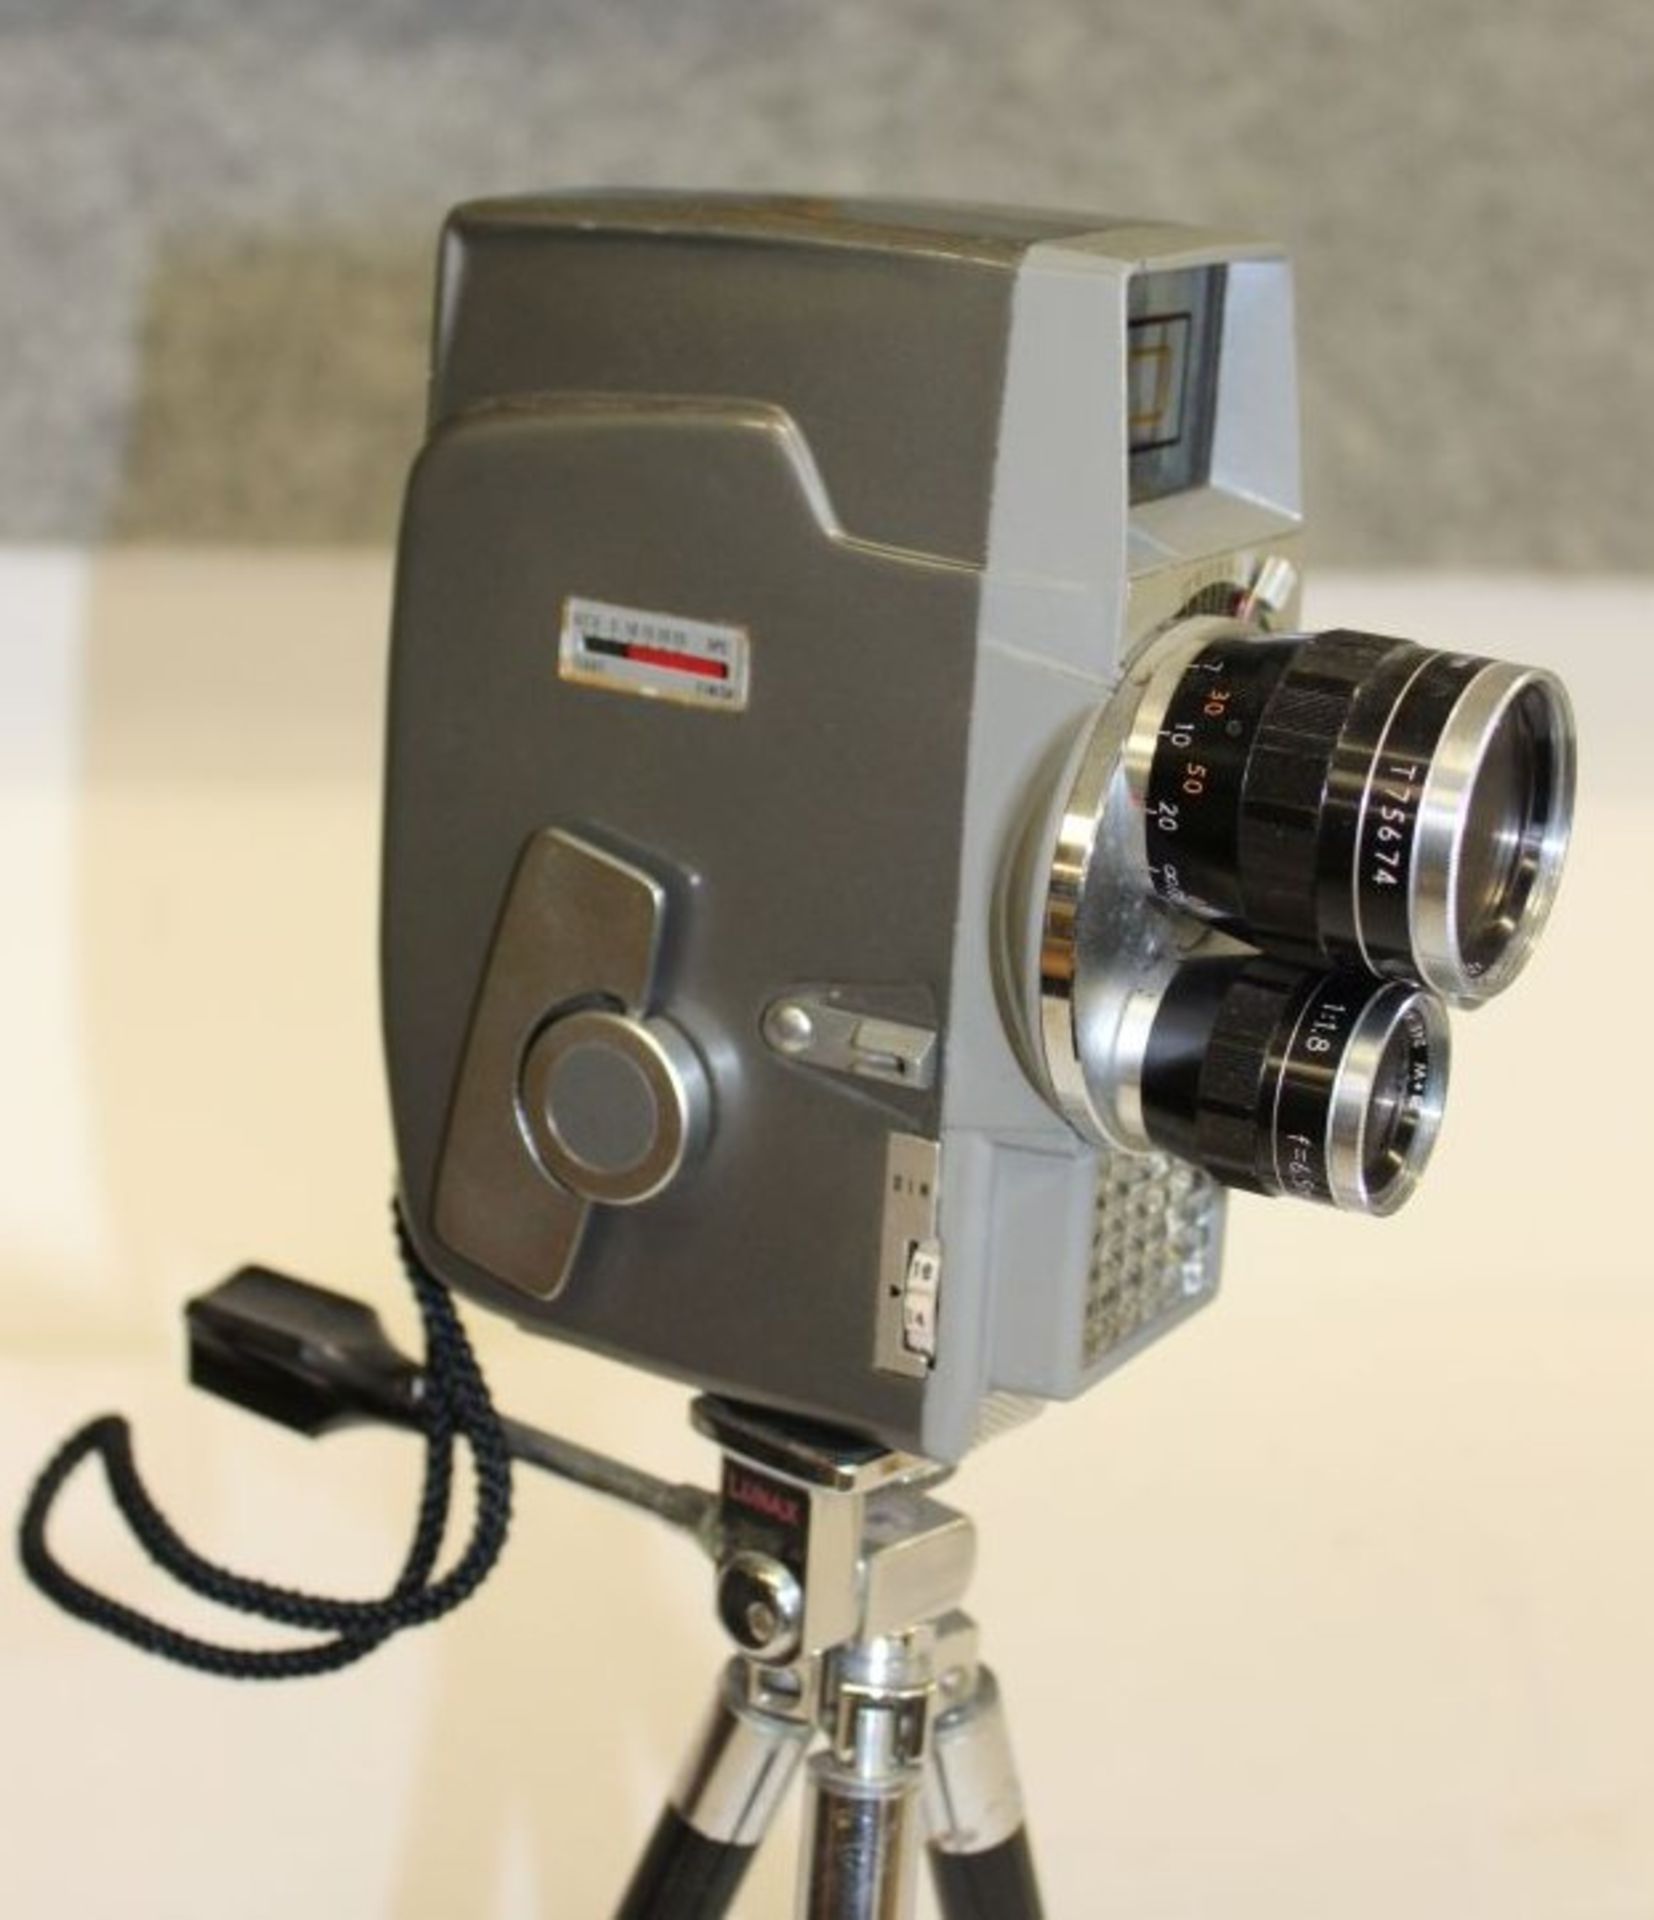 Super Acht-Kamera "Sankyo-Movimat", auf Stativ, Funktion nicht geprüft. - Bild 2 aus 3